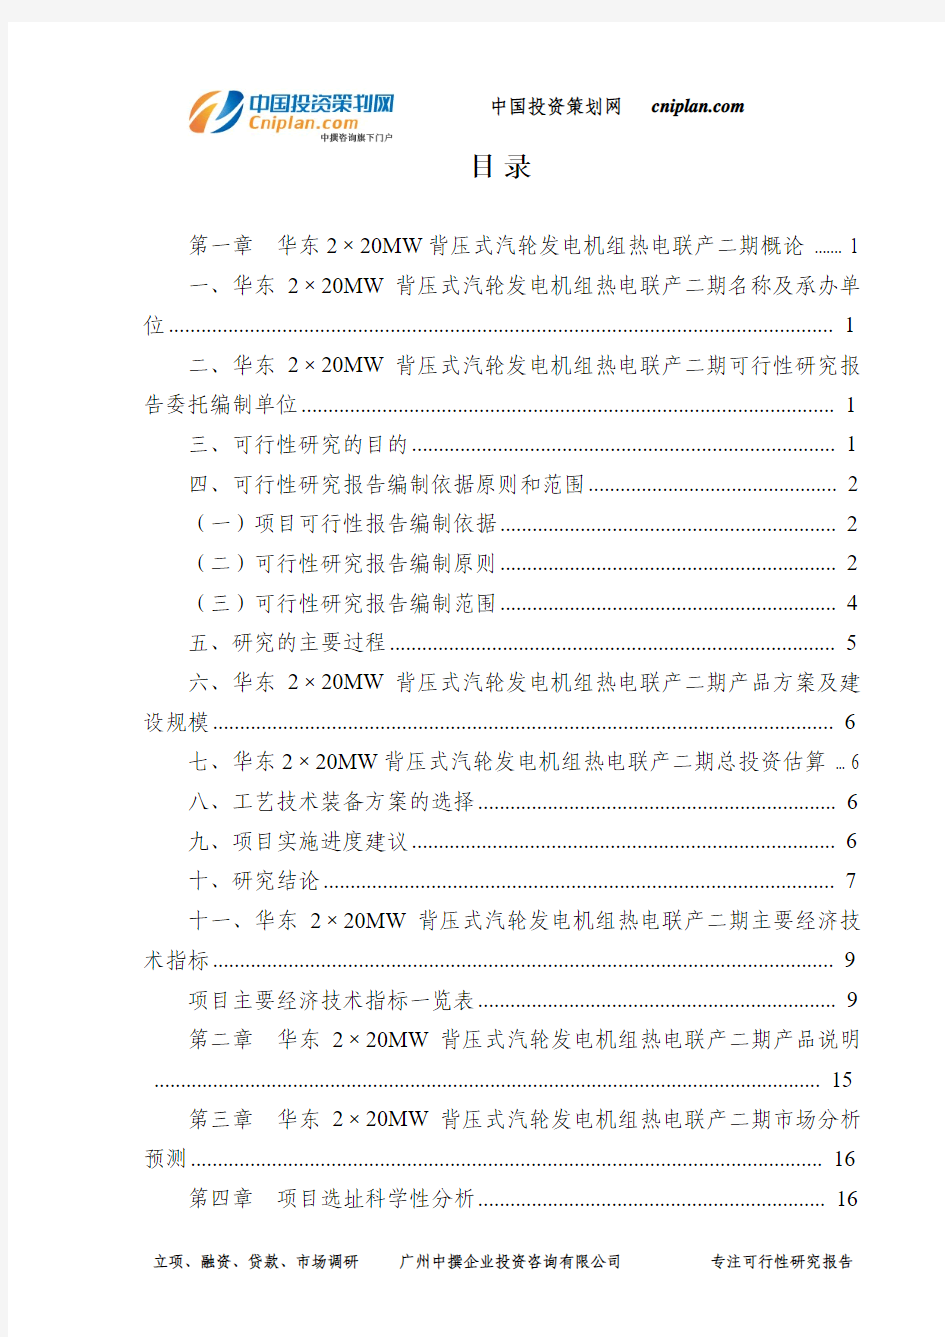 华东2×20MW背压式汽轮发电机组热电联产二期可行性研究报告-广州中撰咨询